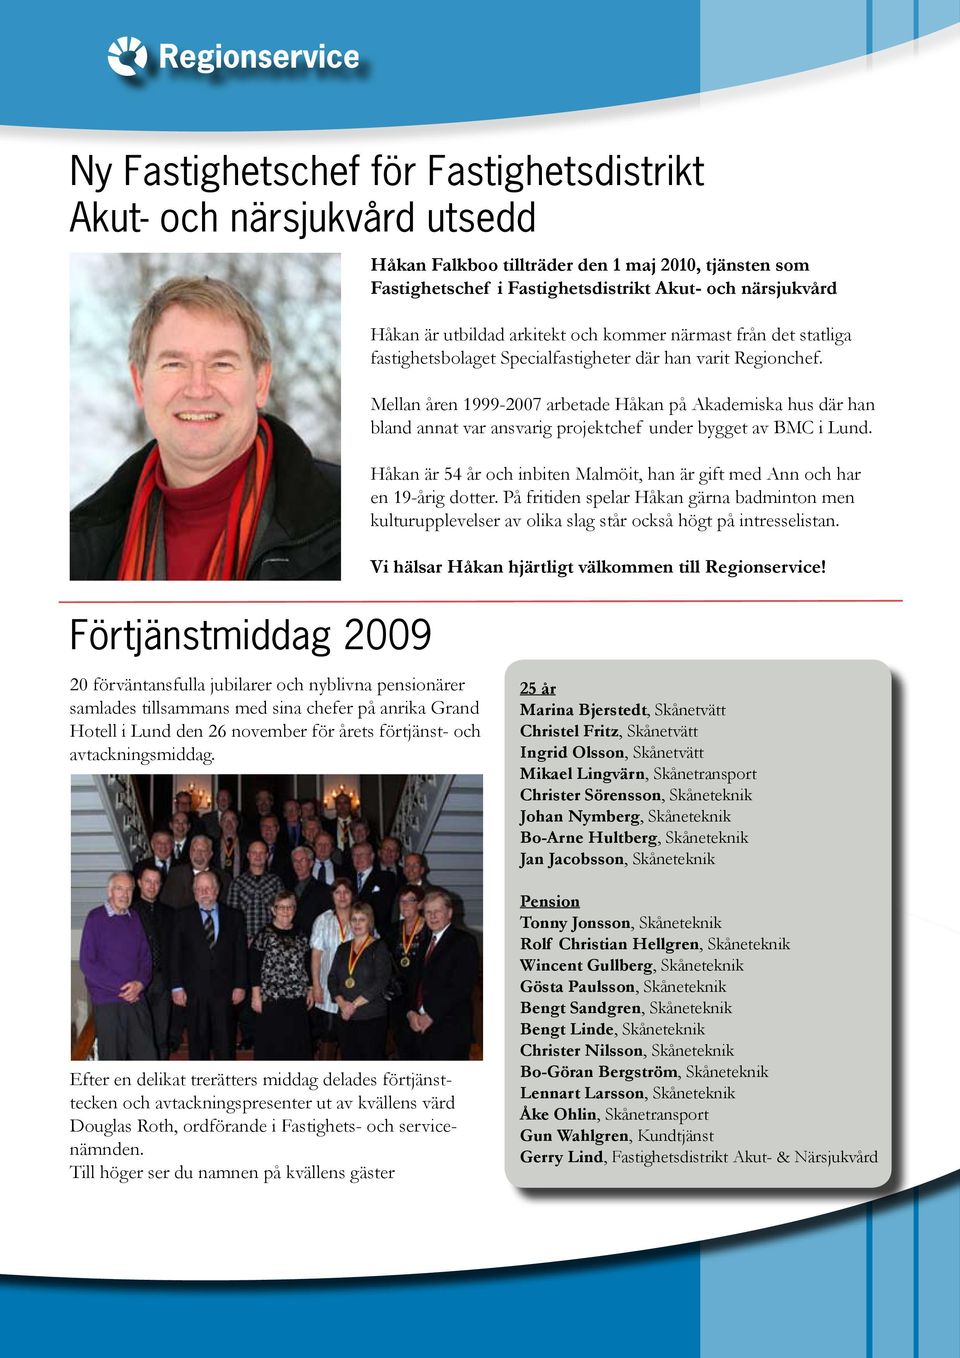 Mellan åren 1999-2007 arbetade Håkan på Akademiska hus där han bland annat var ansvarig projektchef under bygget av BMC i Lund.